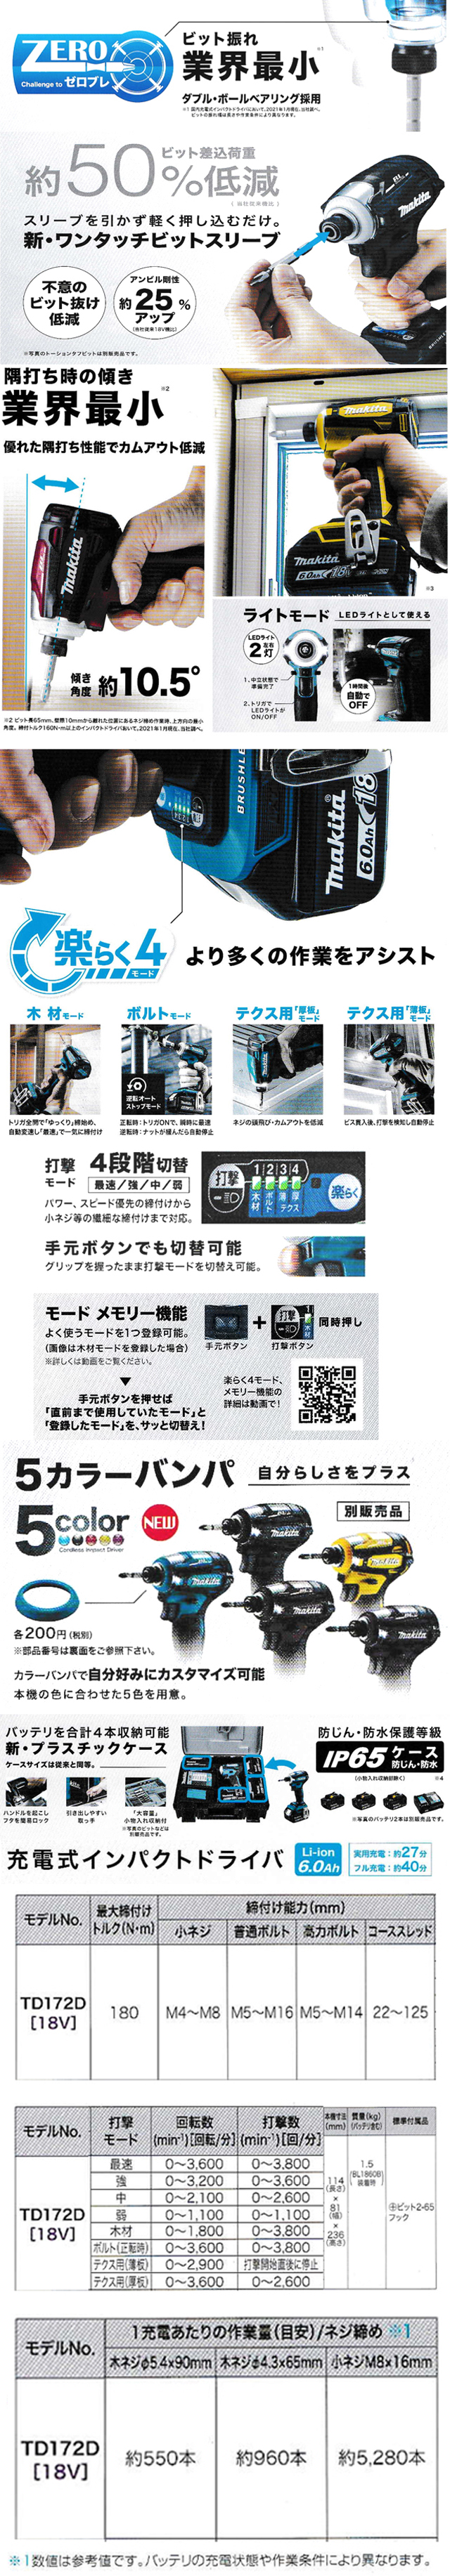 マキタ 18V充電式インパクトドライバ TD172DRGX(6.0Ah電池)（イエロー＆ブラック）【ツートンカラー仕様】